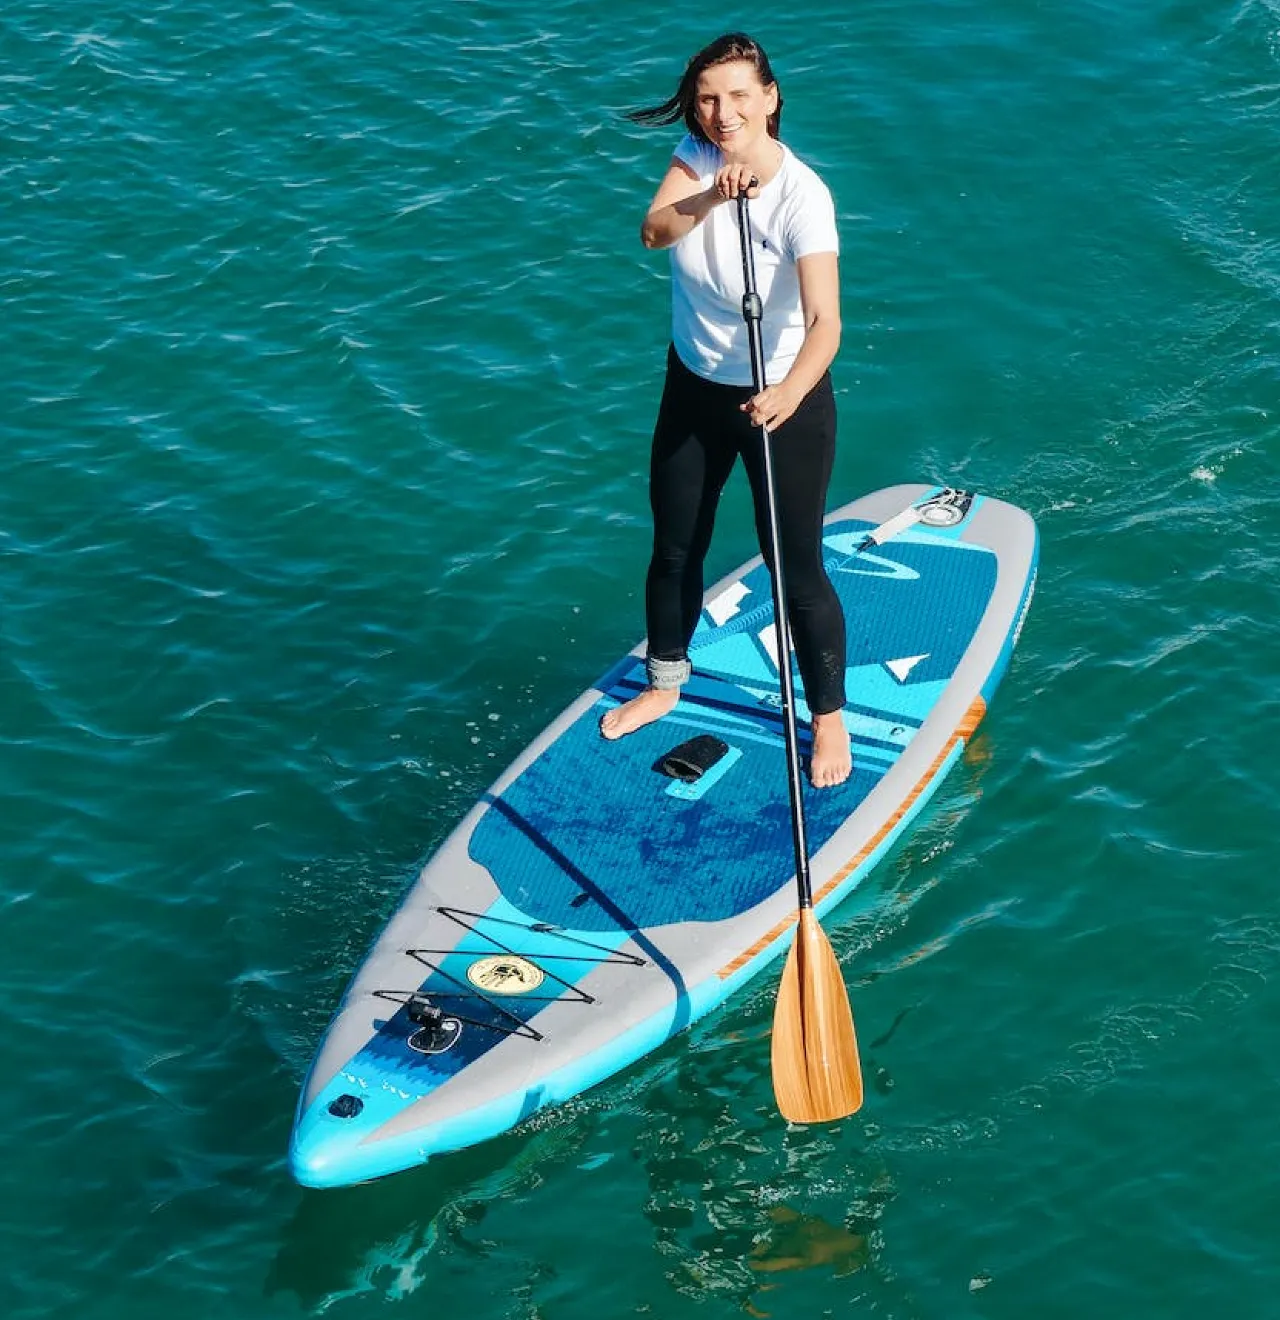 stand-up-paddle-board-sup-woman-paddling-looking-at-camera - Hunting ...